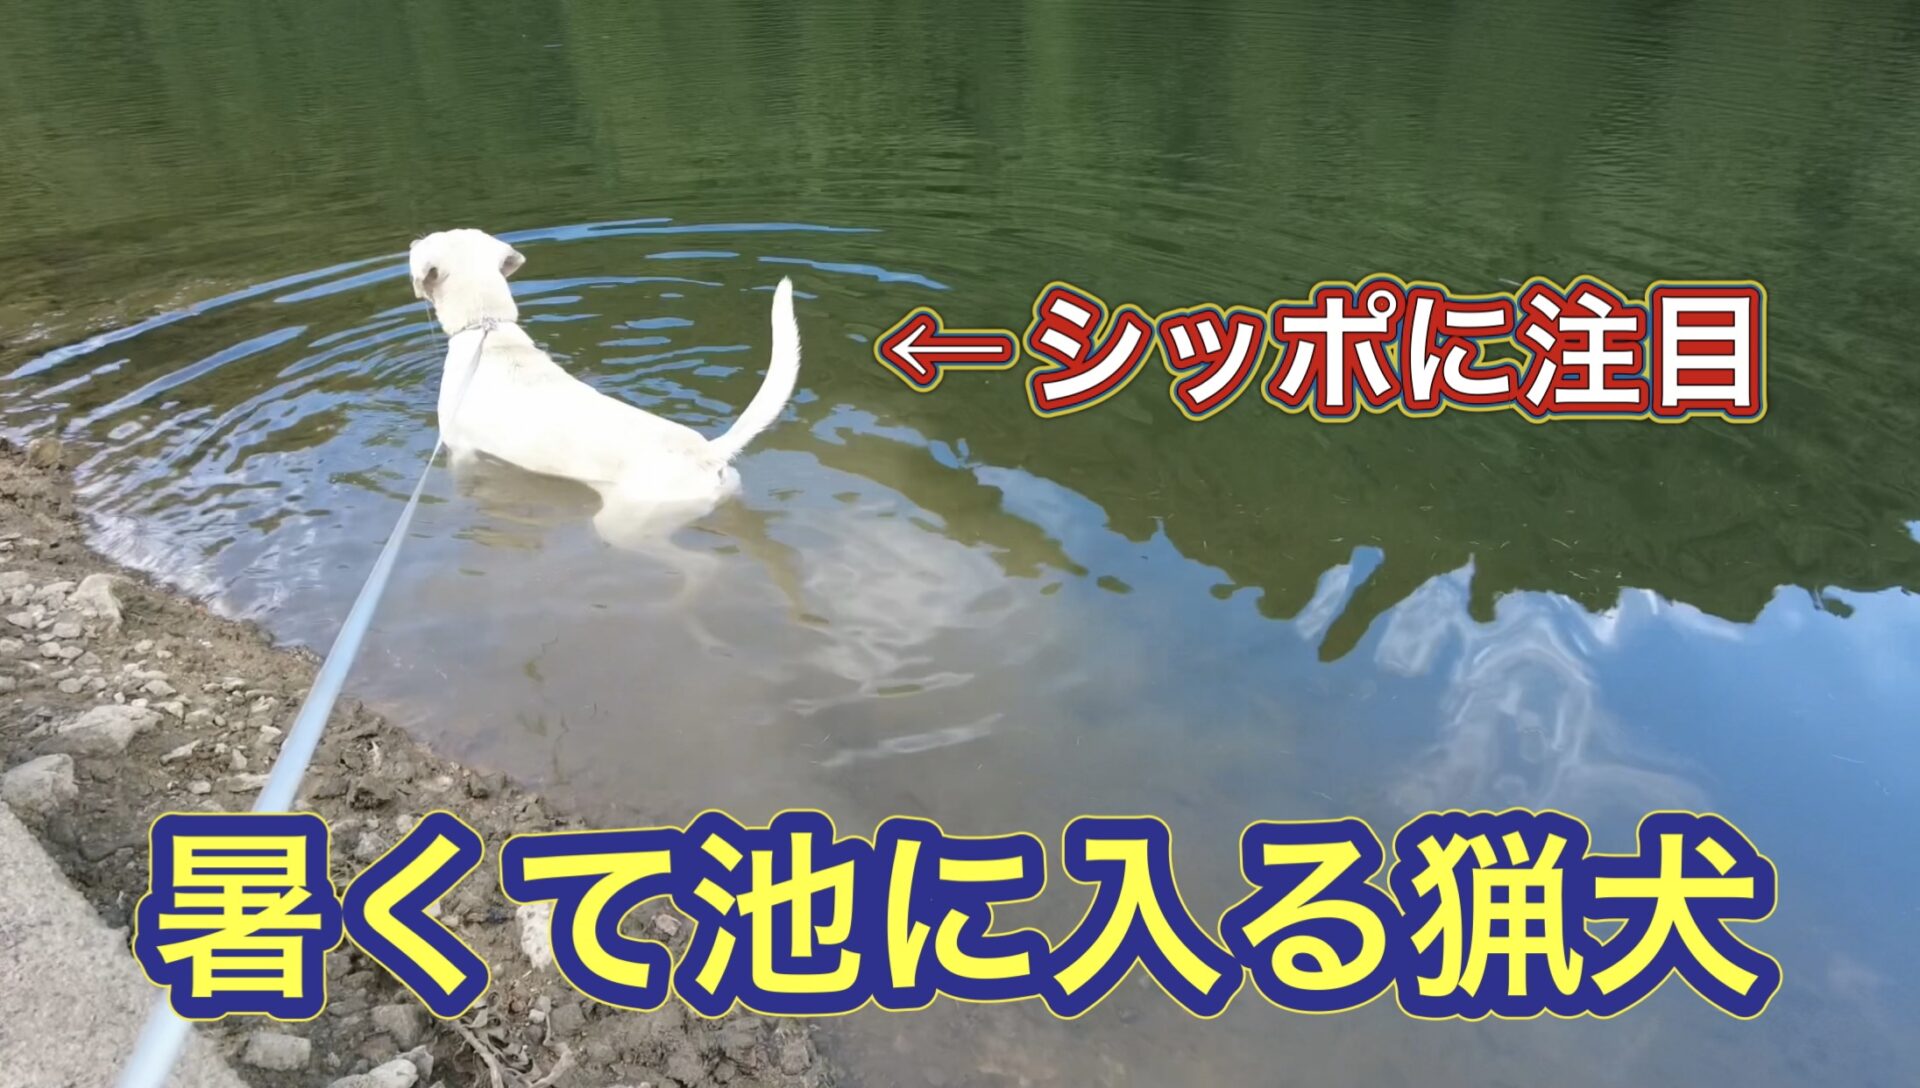 あまりの暑さにイノシシのことは忘れて、ため池にシレッと入る猟犬